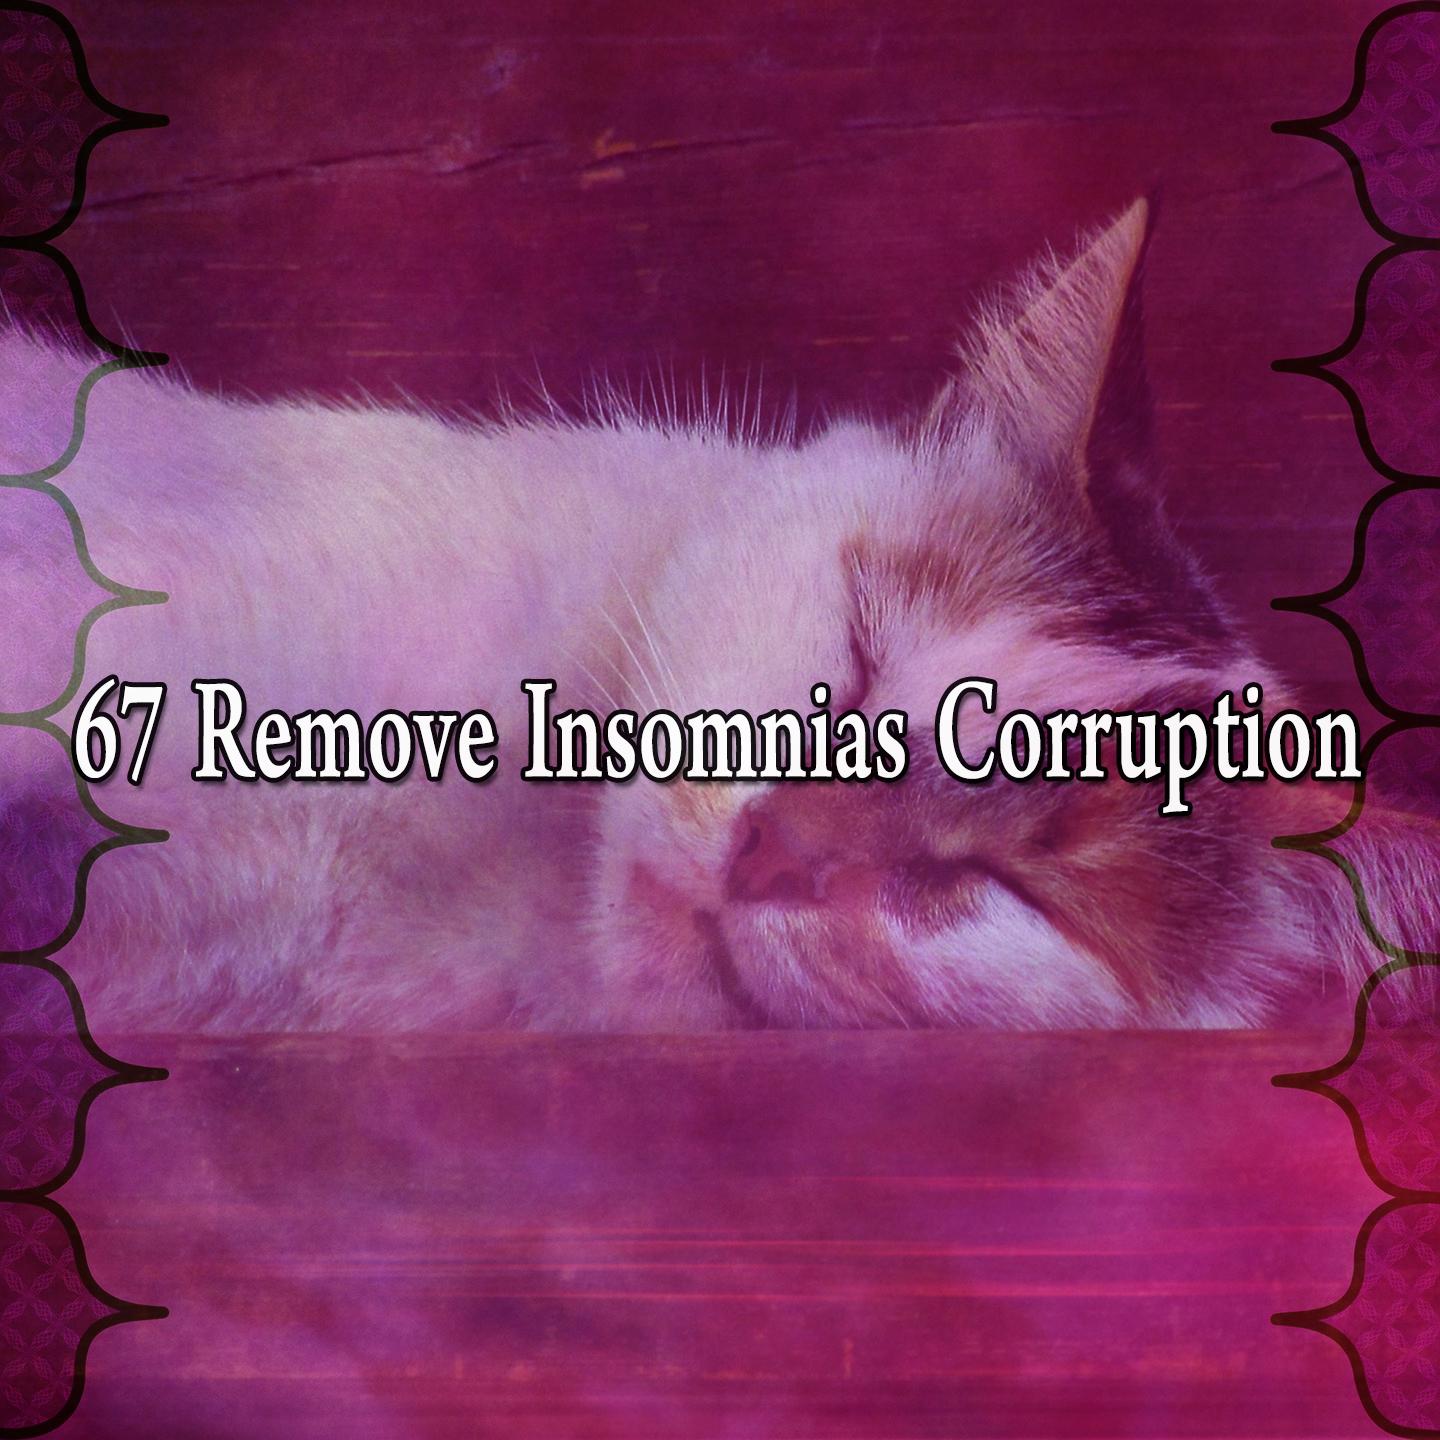 67 Remove Insomnias Corruption